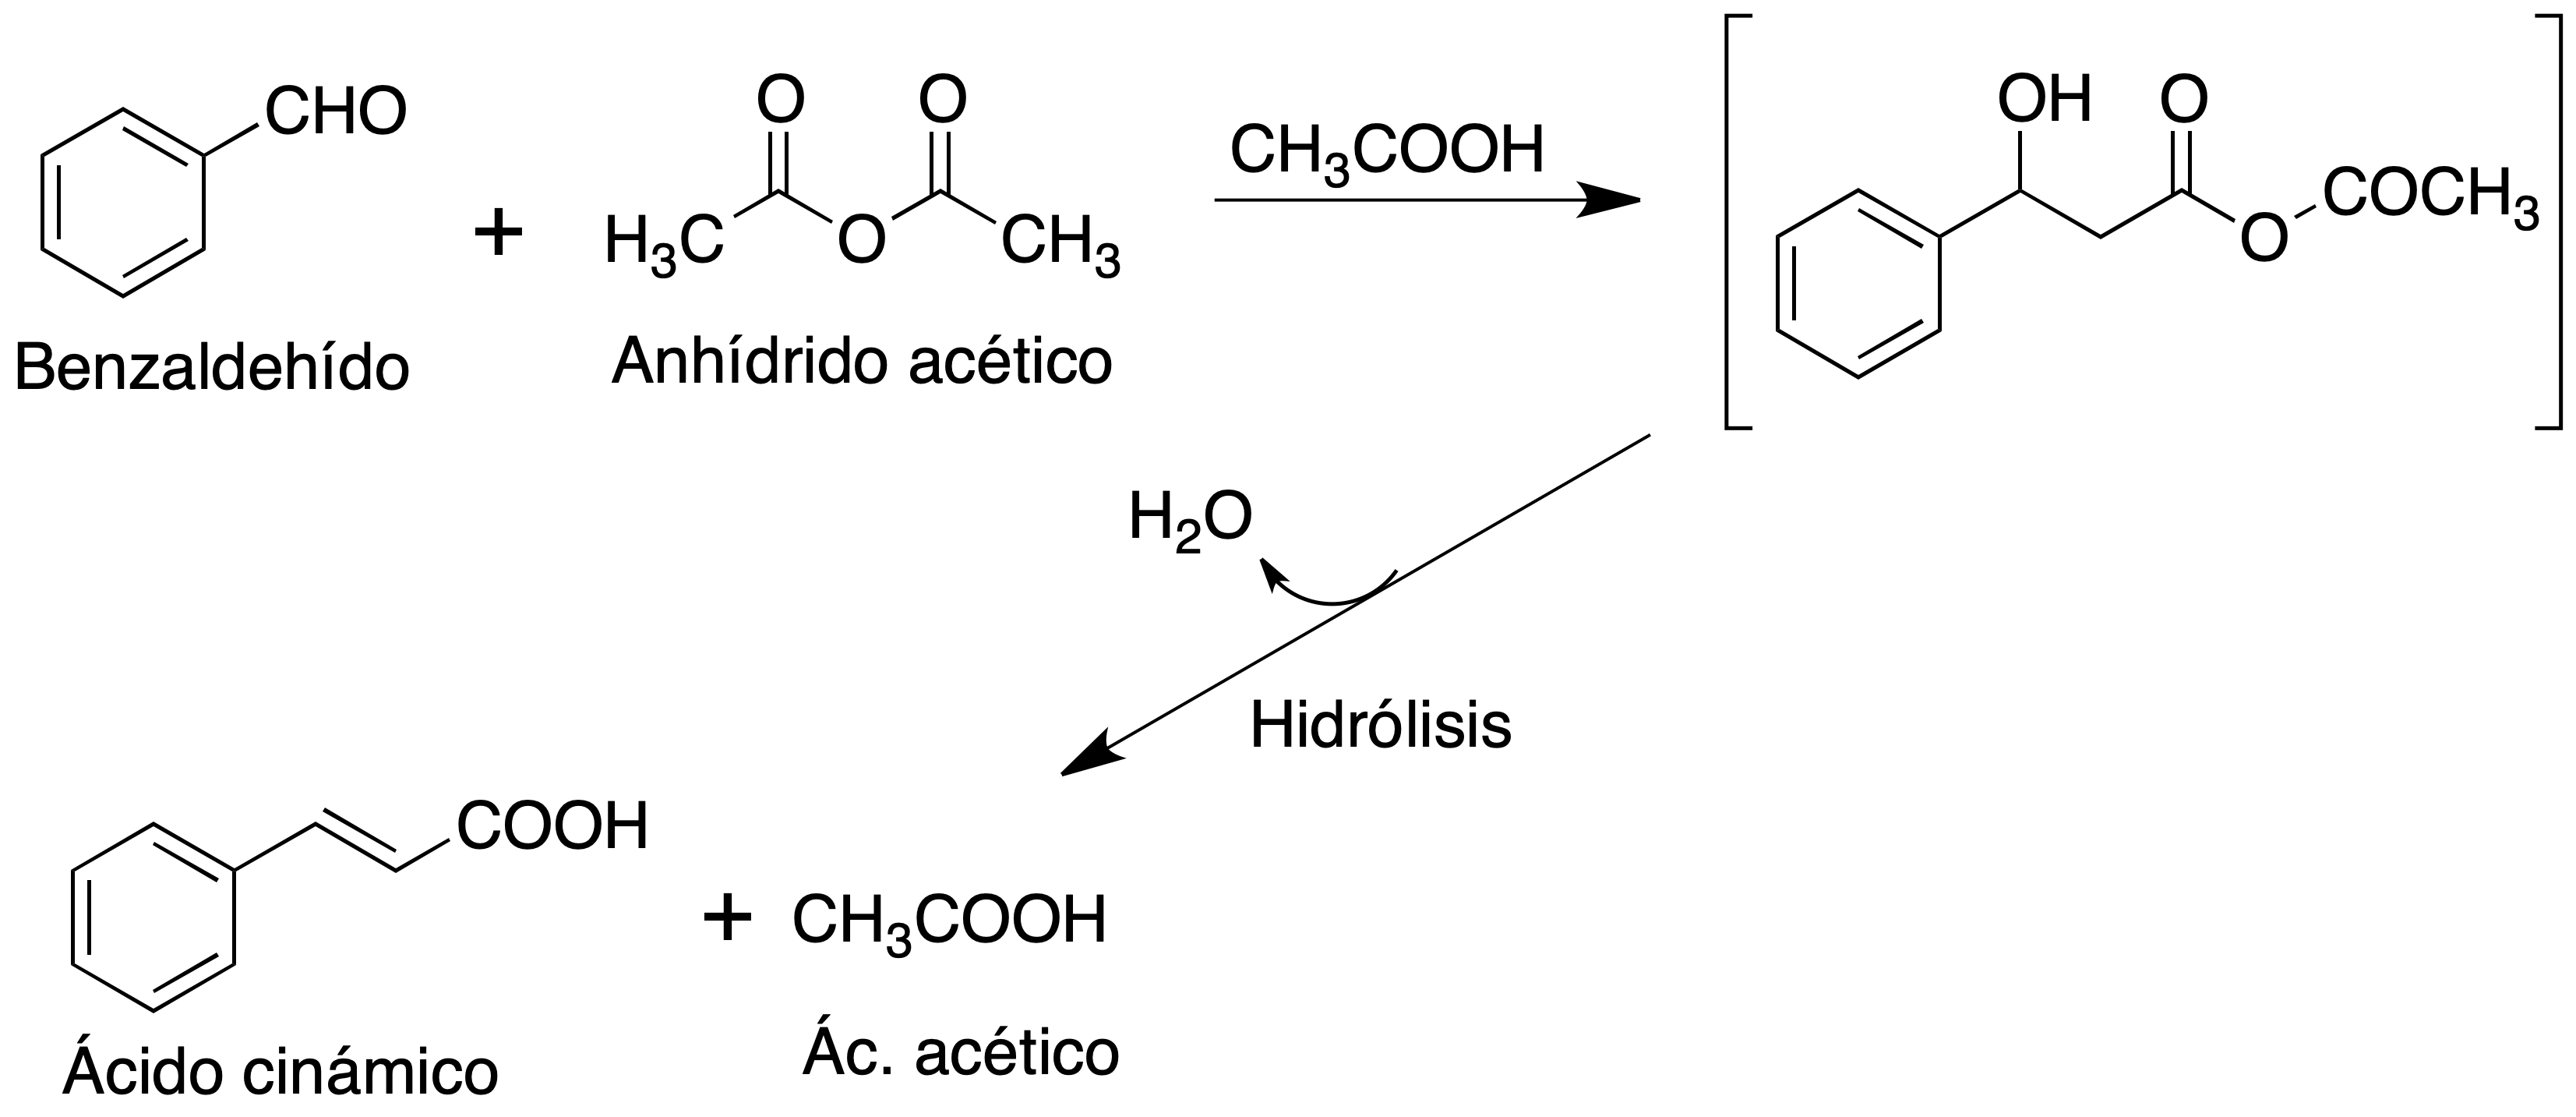 sintesis del acido cinamico - esquema general de reaccion